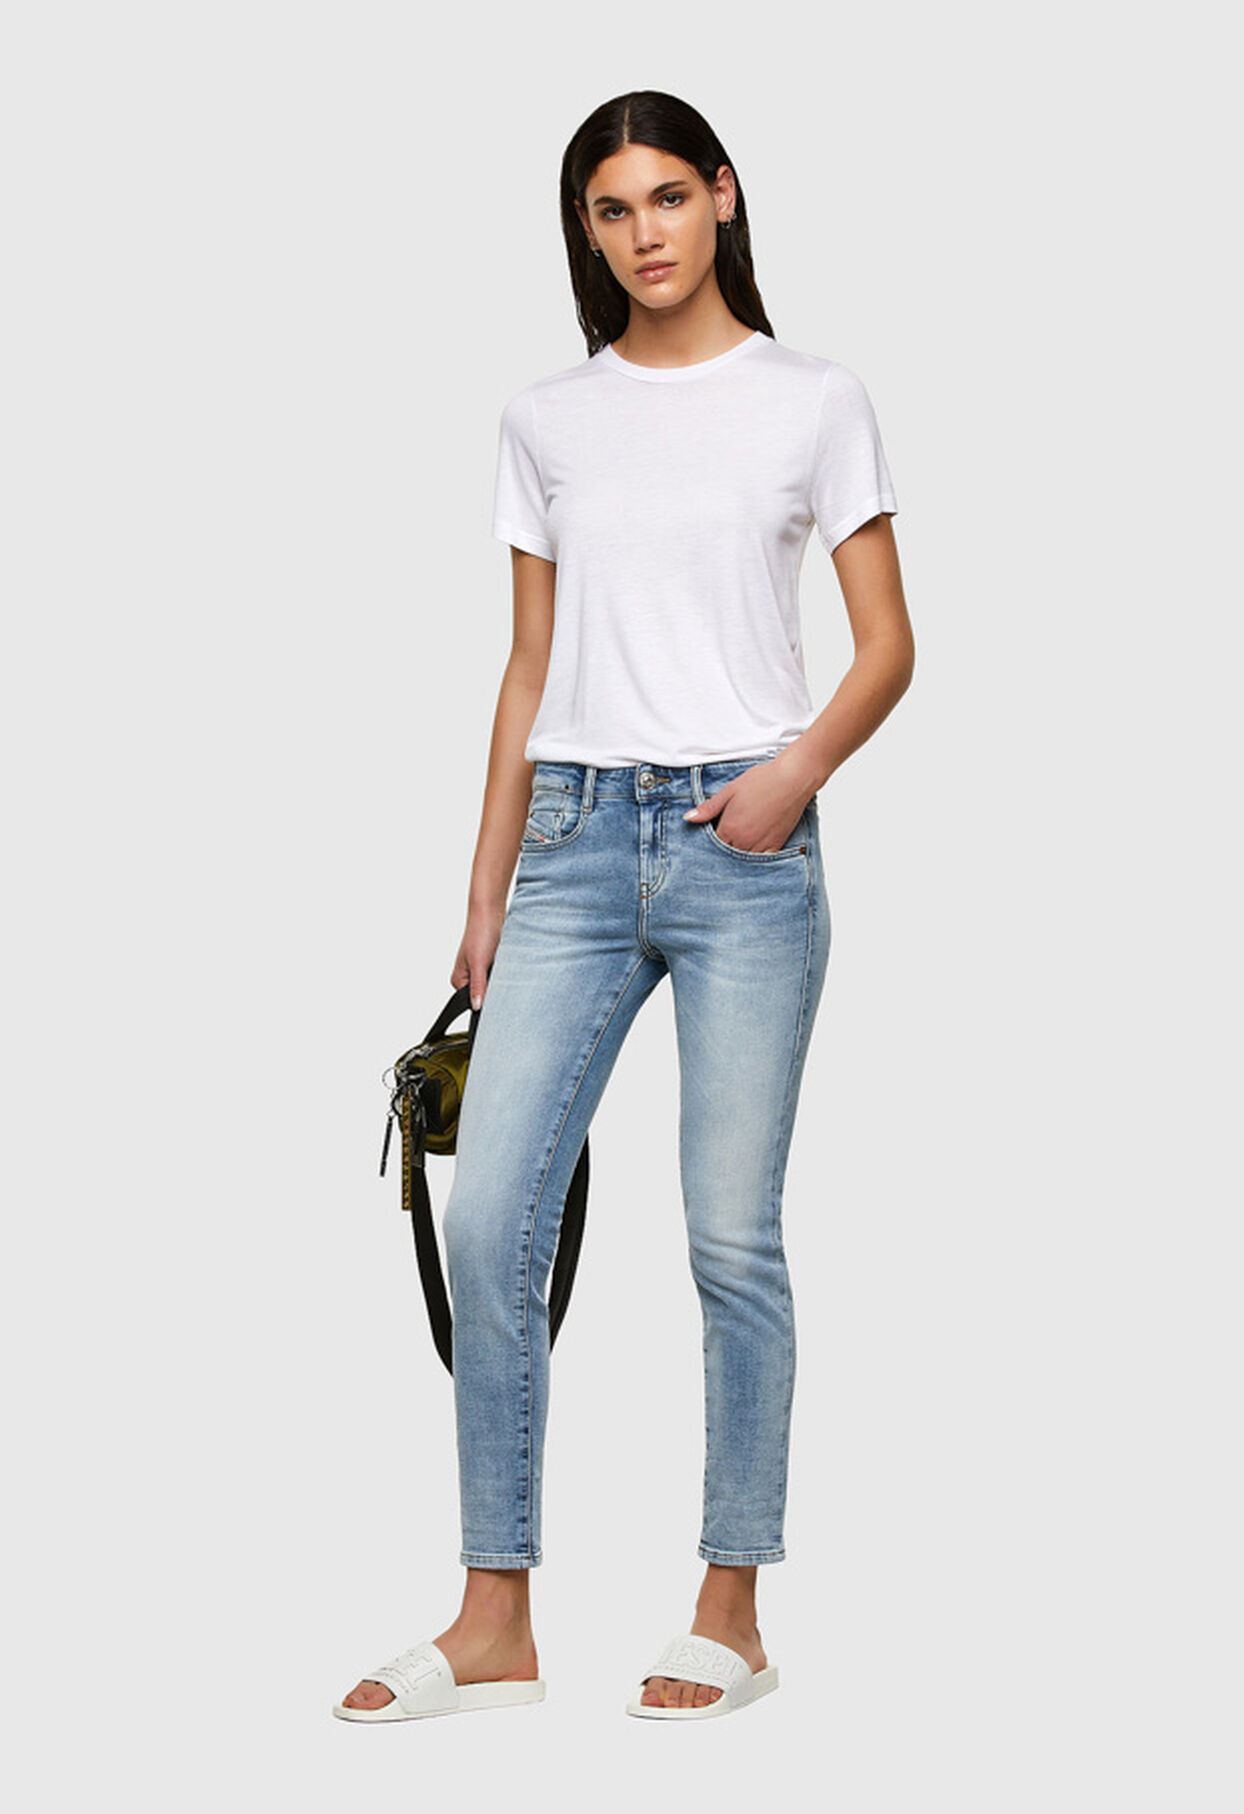 Women's JoggJeans: Slim, Boyfriend, Wide | Diesel.com